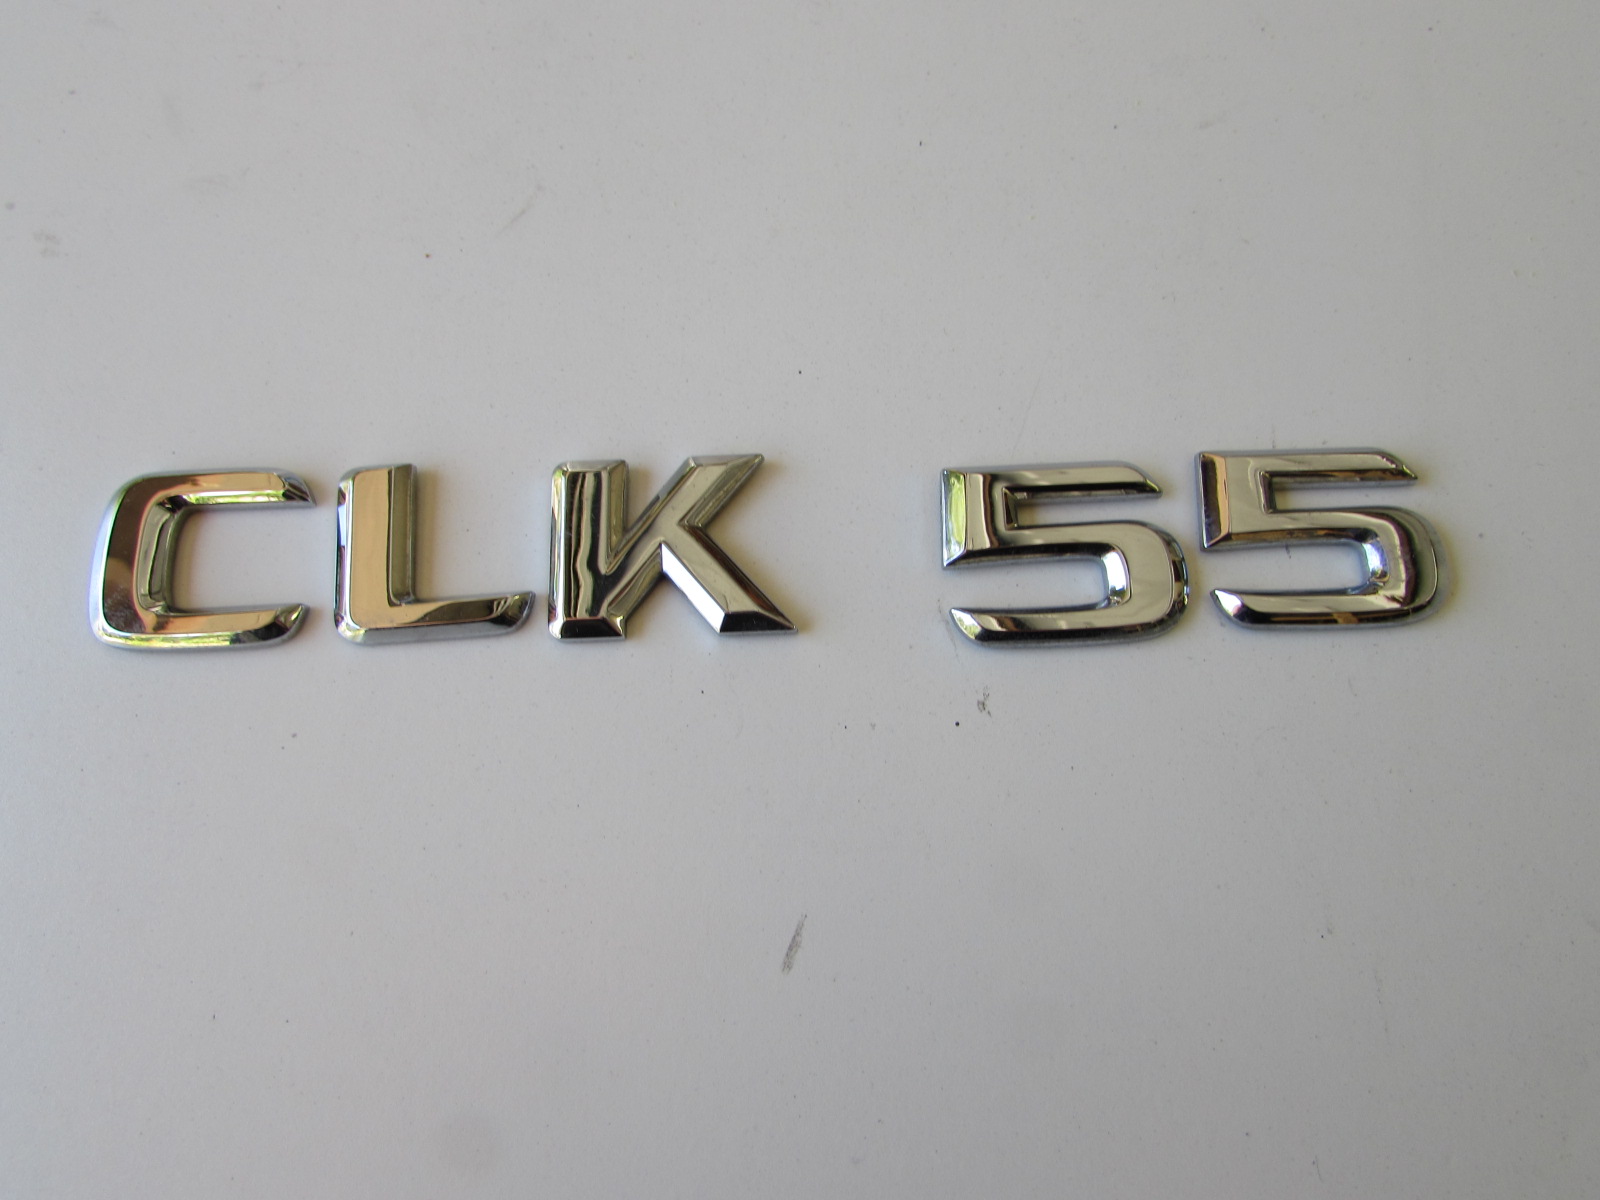 CLK55 AMG Silver Chrome Lettre Numéro Rear Boot Badge Emblem CLK Classe Mercedes